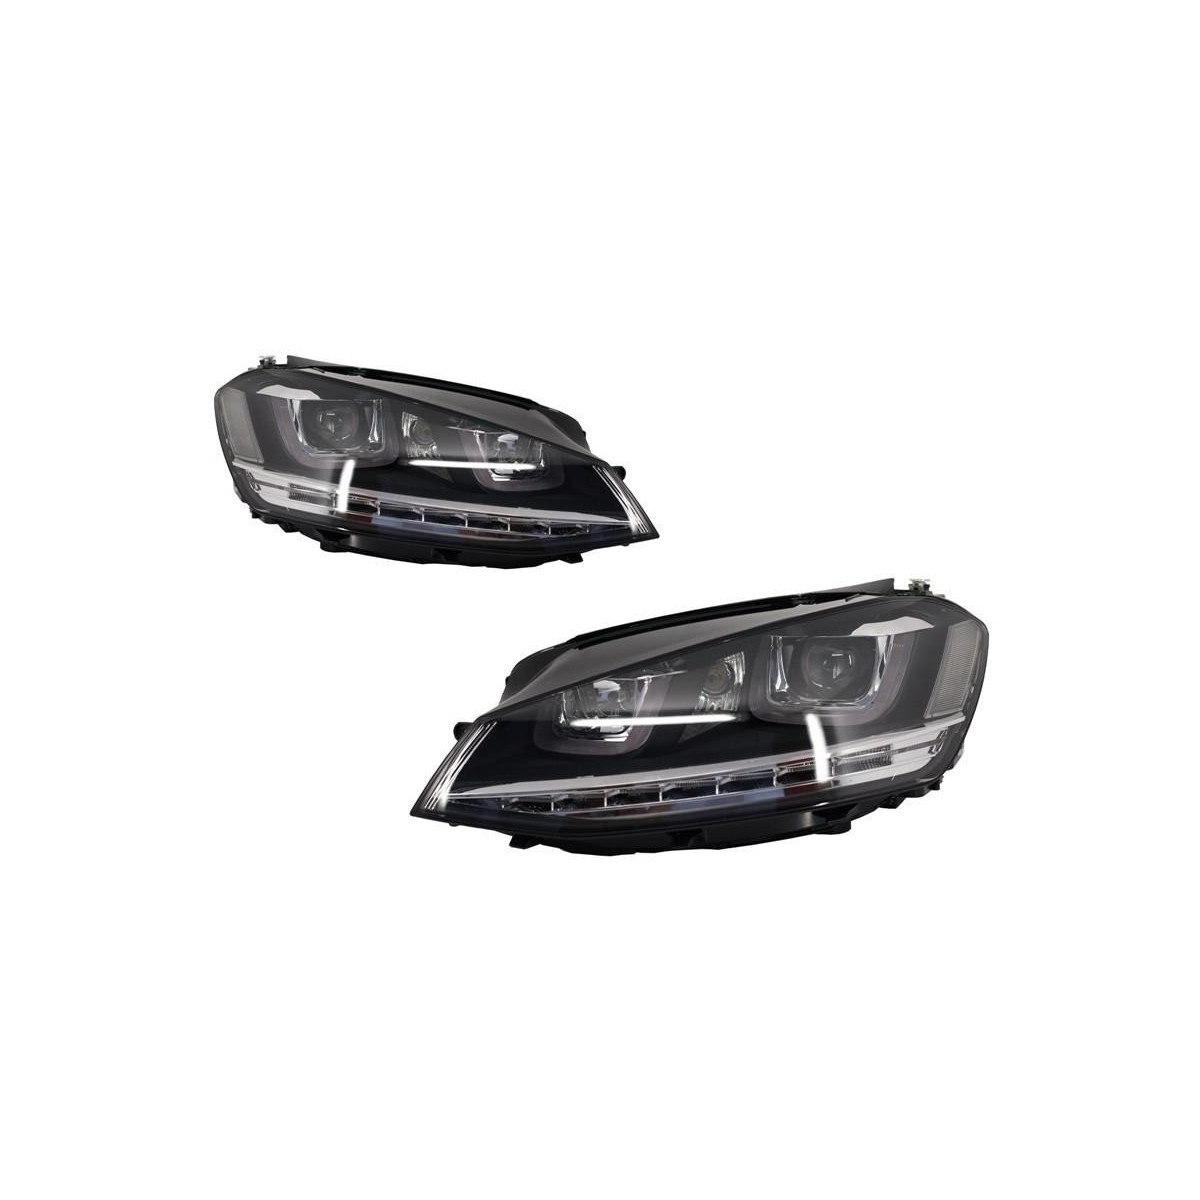 LAMPY PRZEDNIE VW GOLF 7 12-17 LED DRL R-LINE DYN